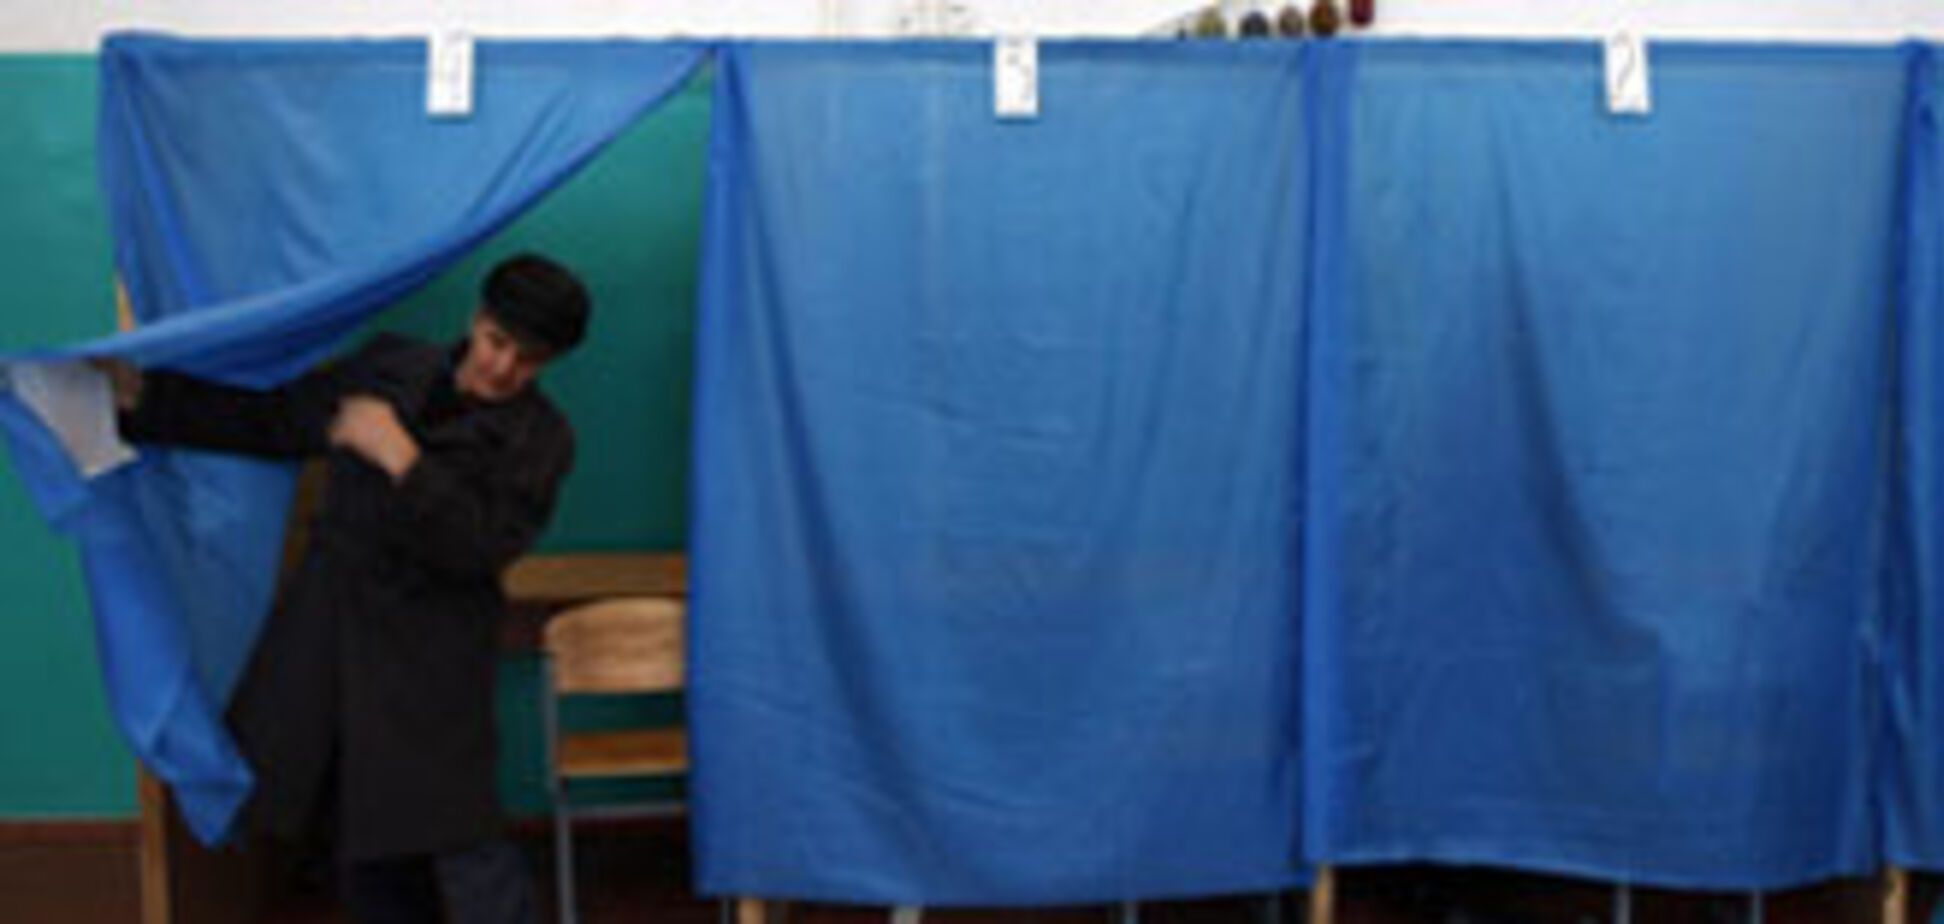 МВД перечислило самые популярные нарушения на выборах